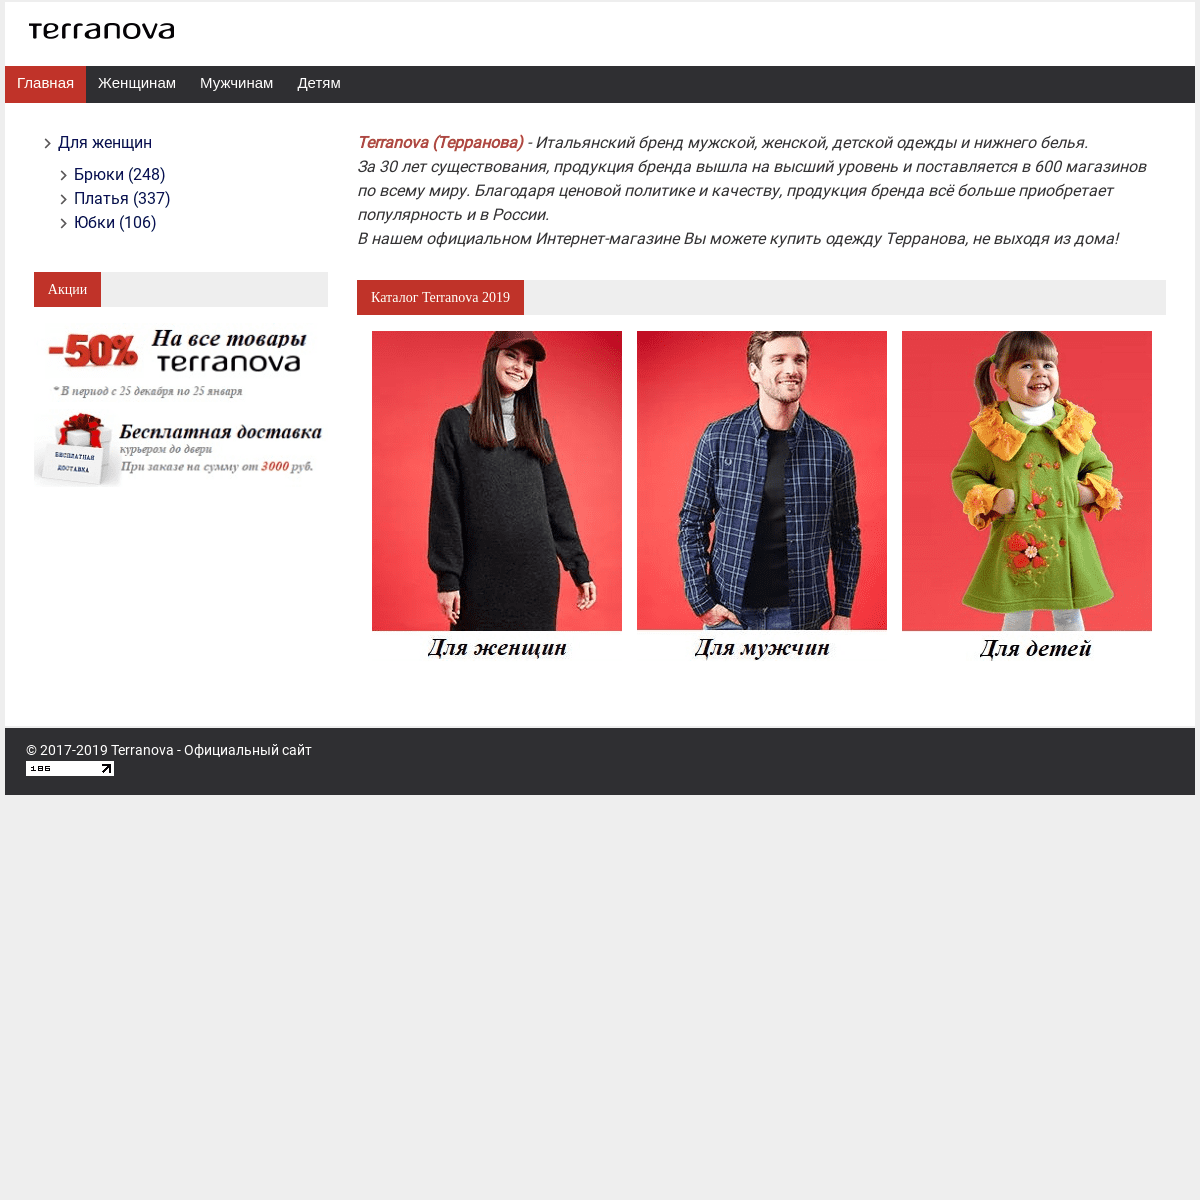 Терранова Одежда Интернет Магазин Официальный Сайт